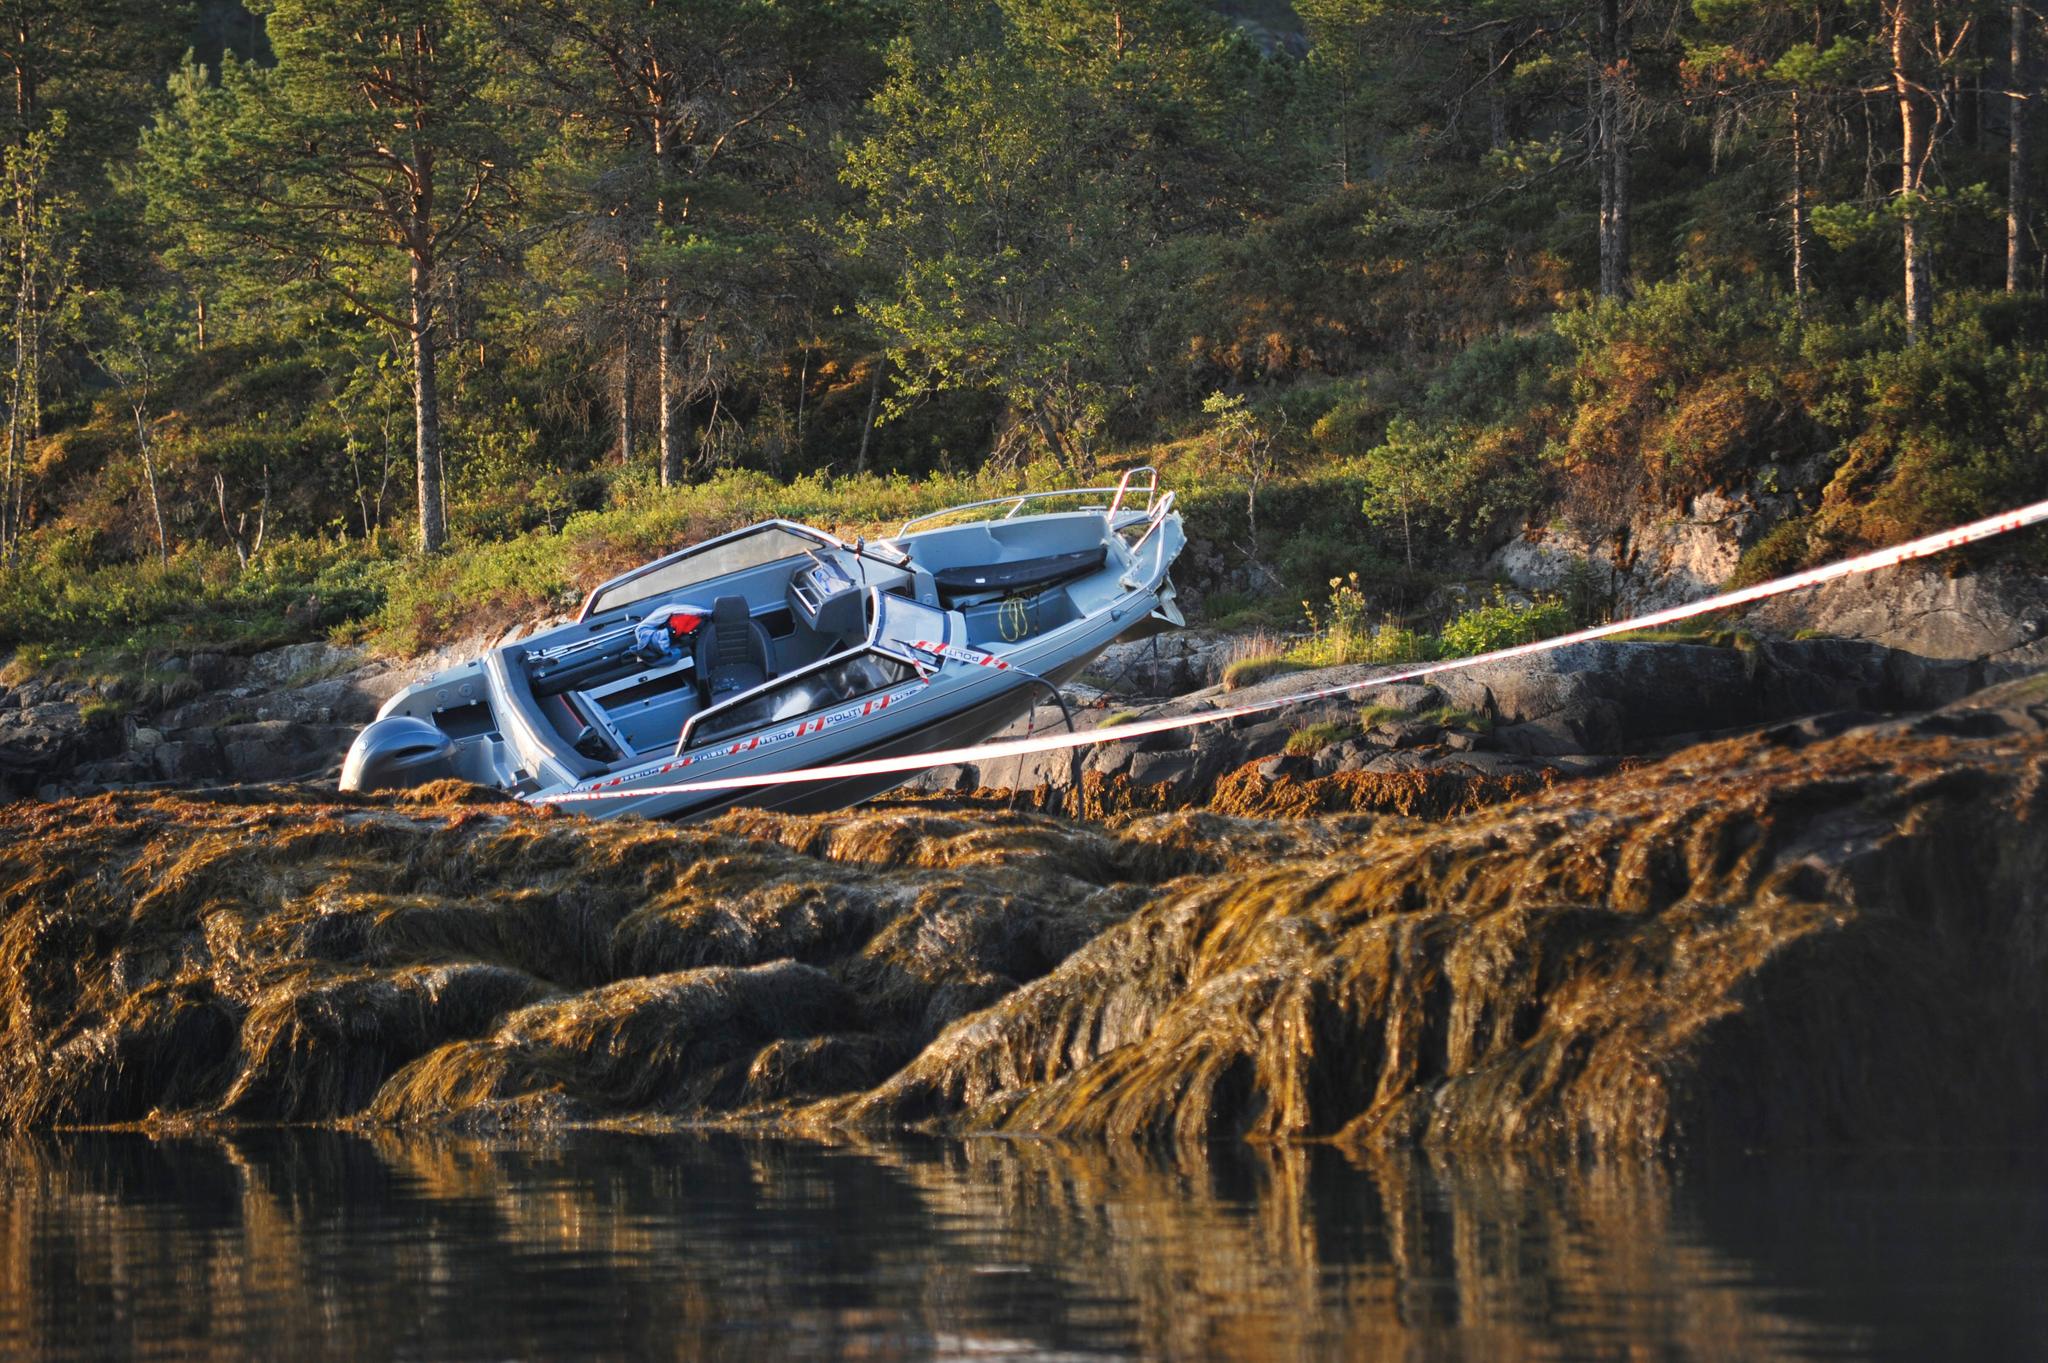 Ingrid Aune og en mann i 40-årene omkom da denne båten gikk på et skjær og deretter ble liggende på land.  Bildet er tatt ved lavvann torsdag morgen. Det var høyvann da ulykken skjedde. 